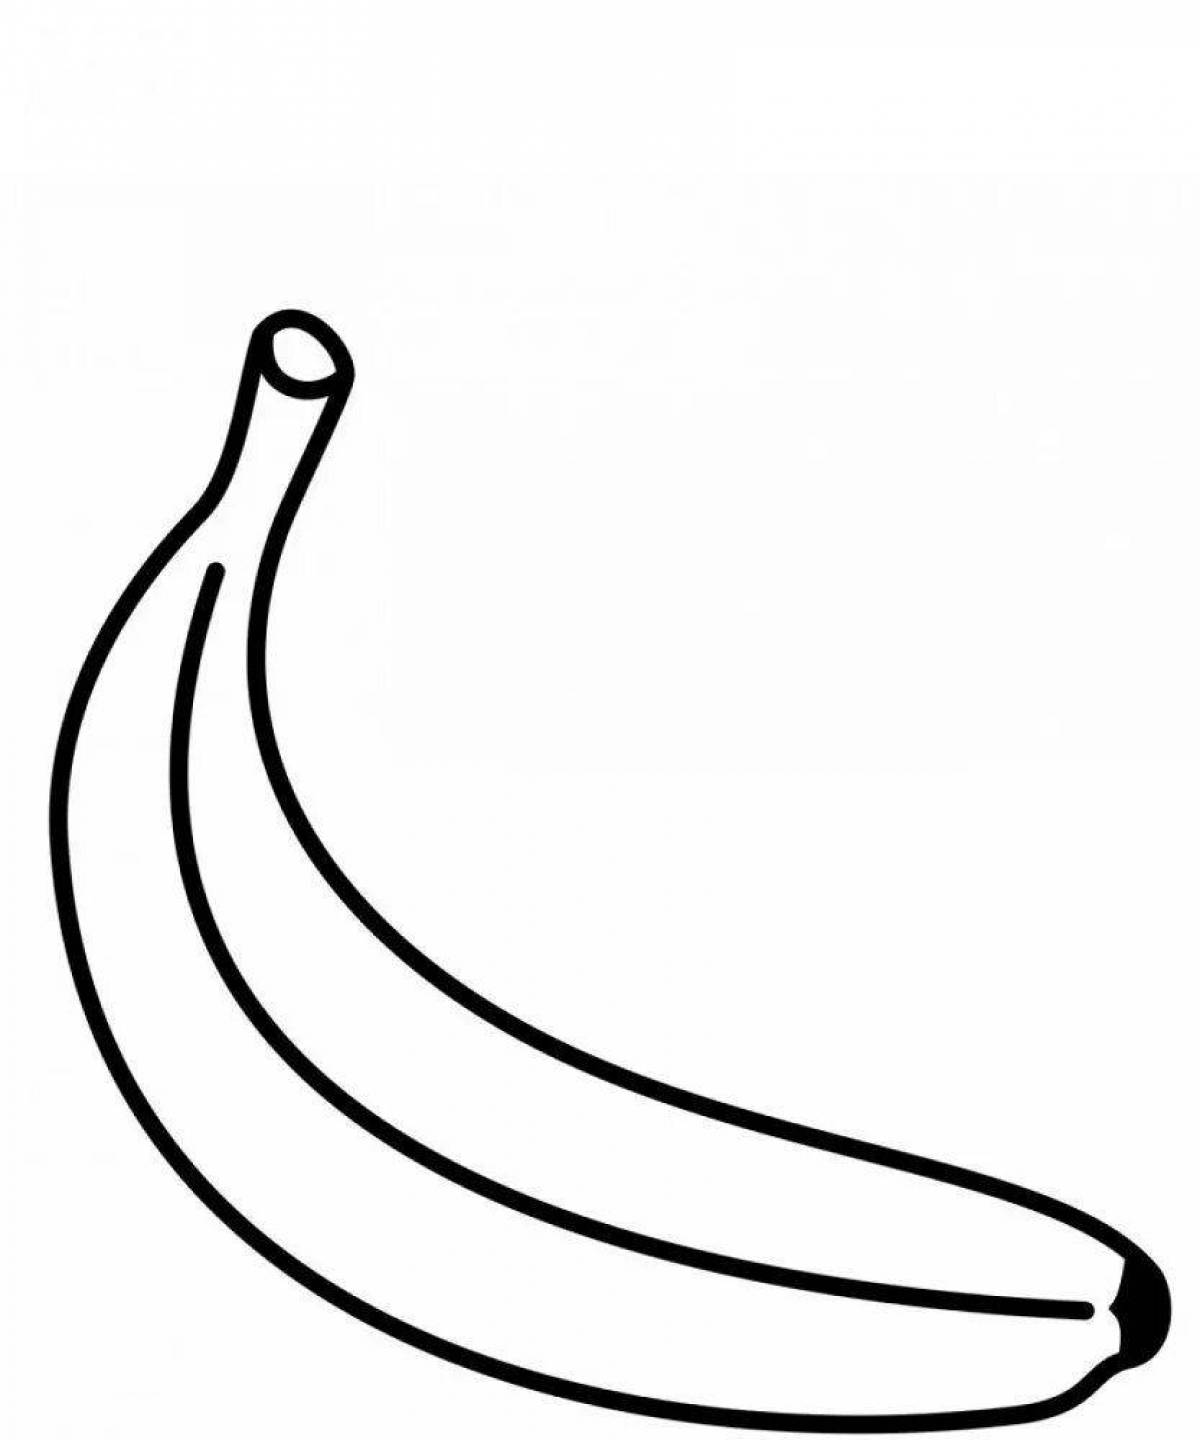 Color drawing of a banana